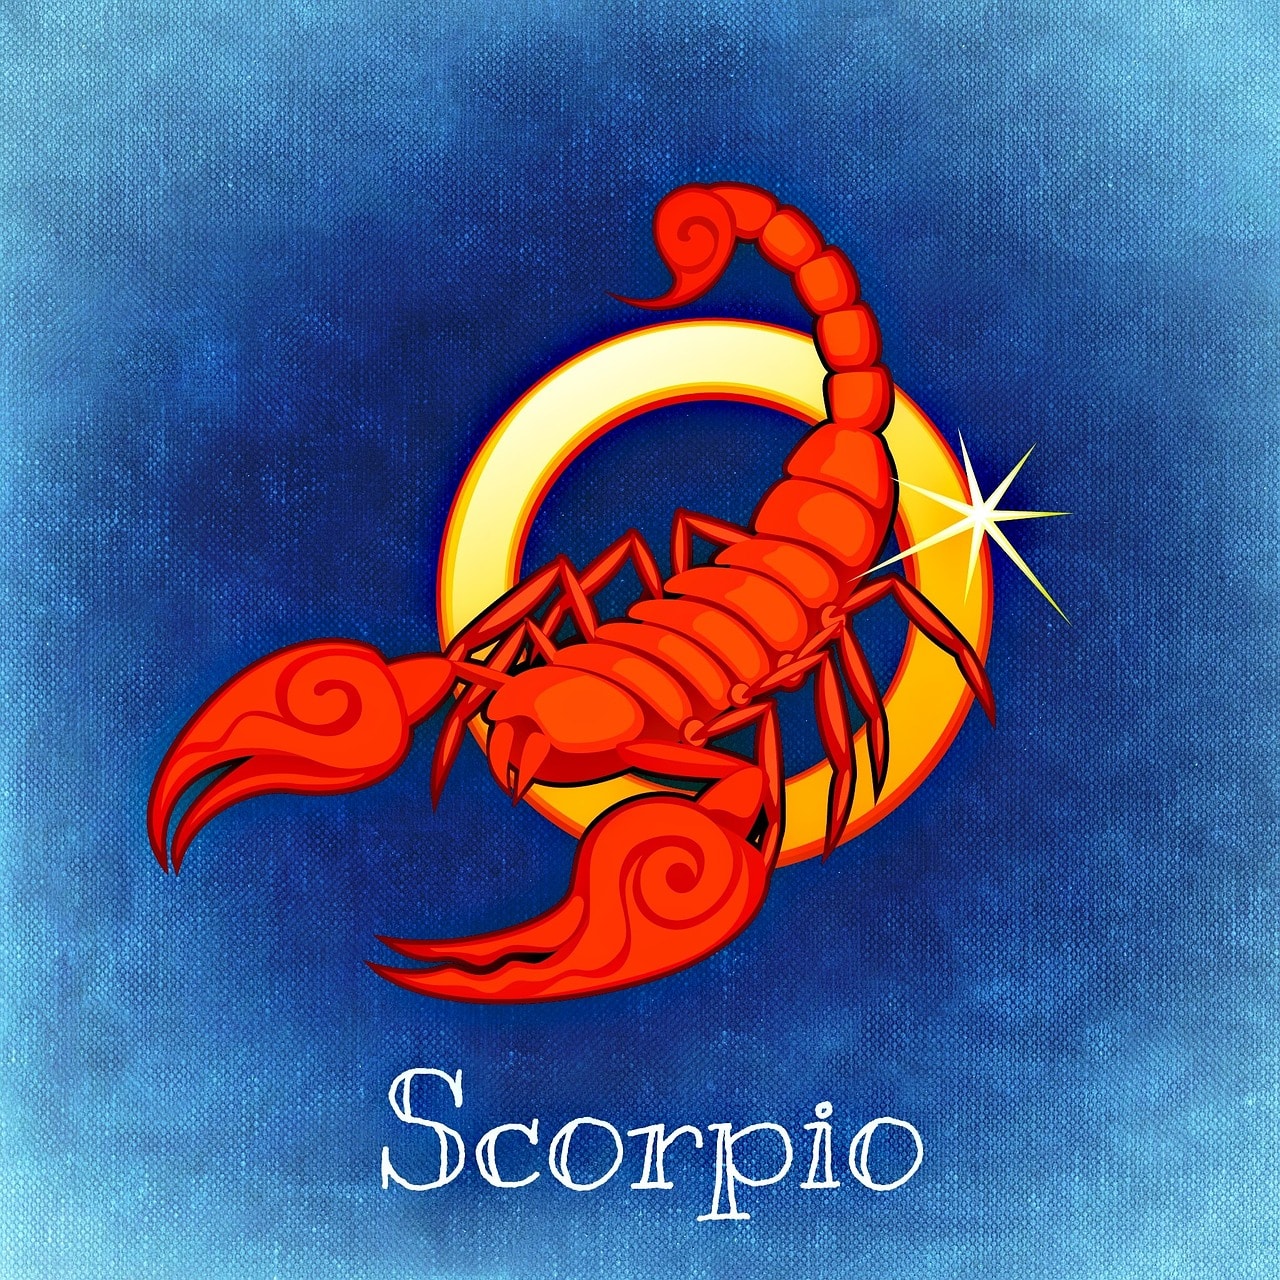 Horoskop steinbock mann skorpion frau